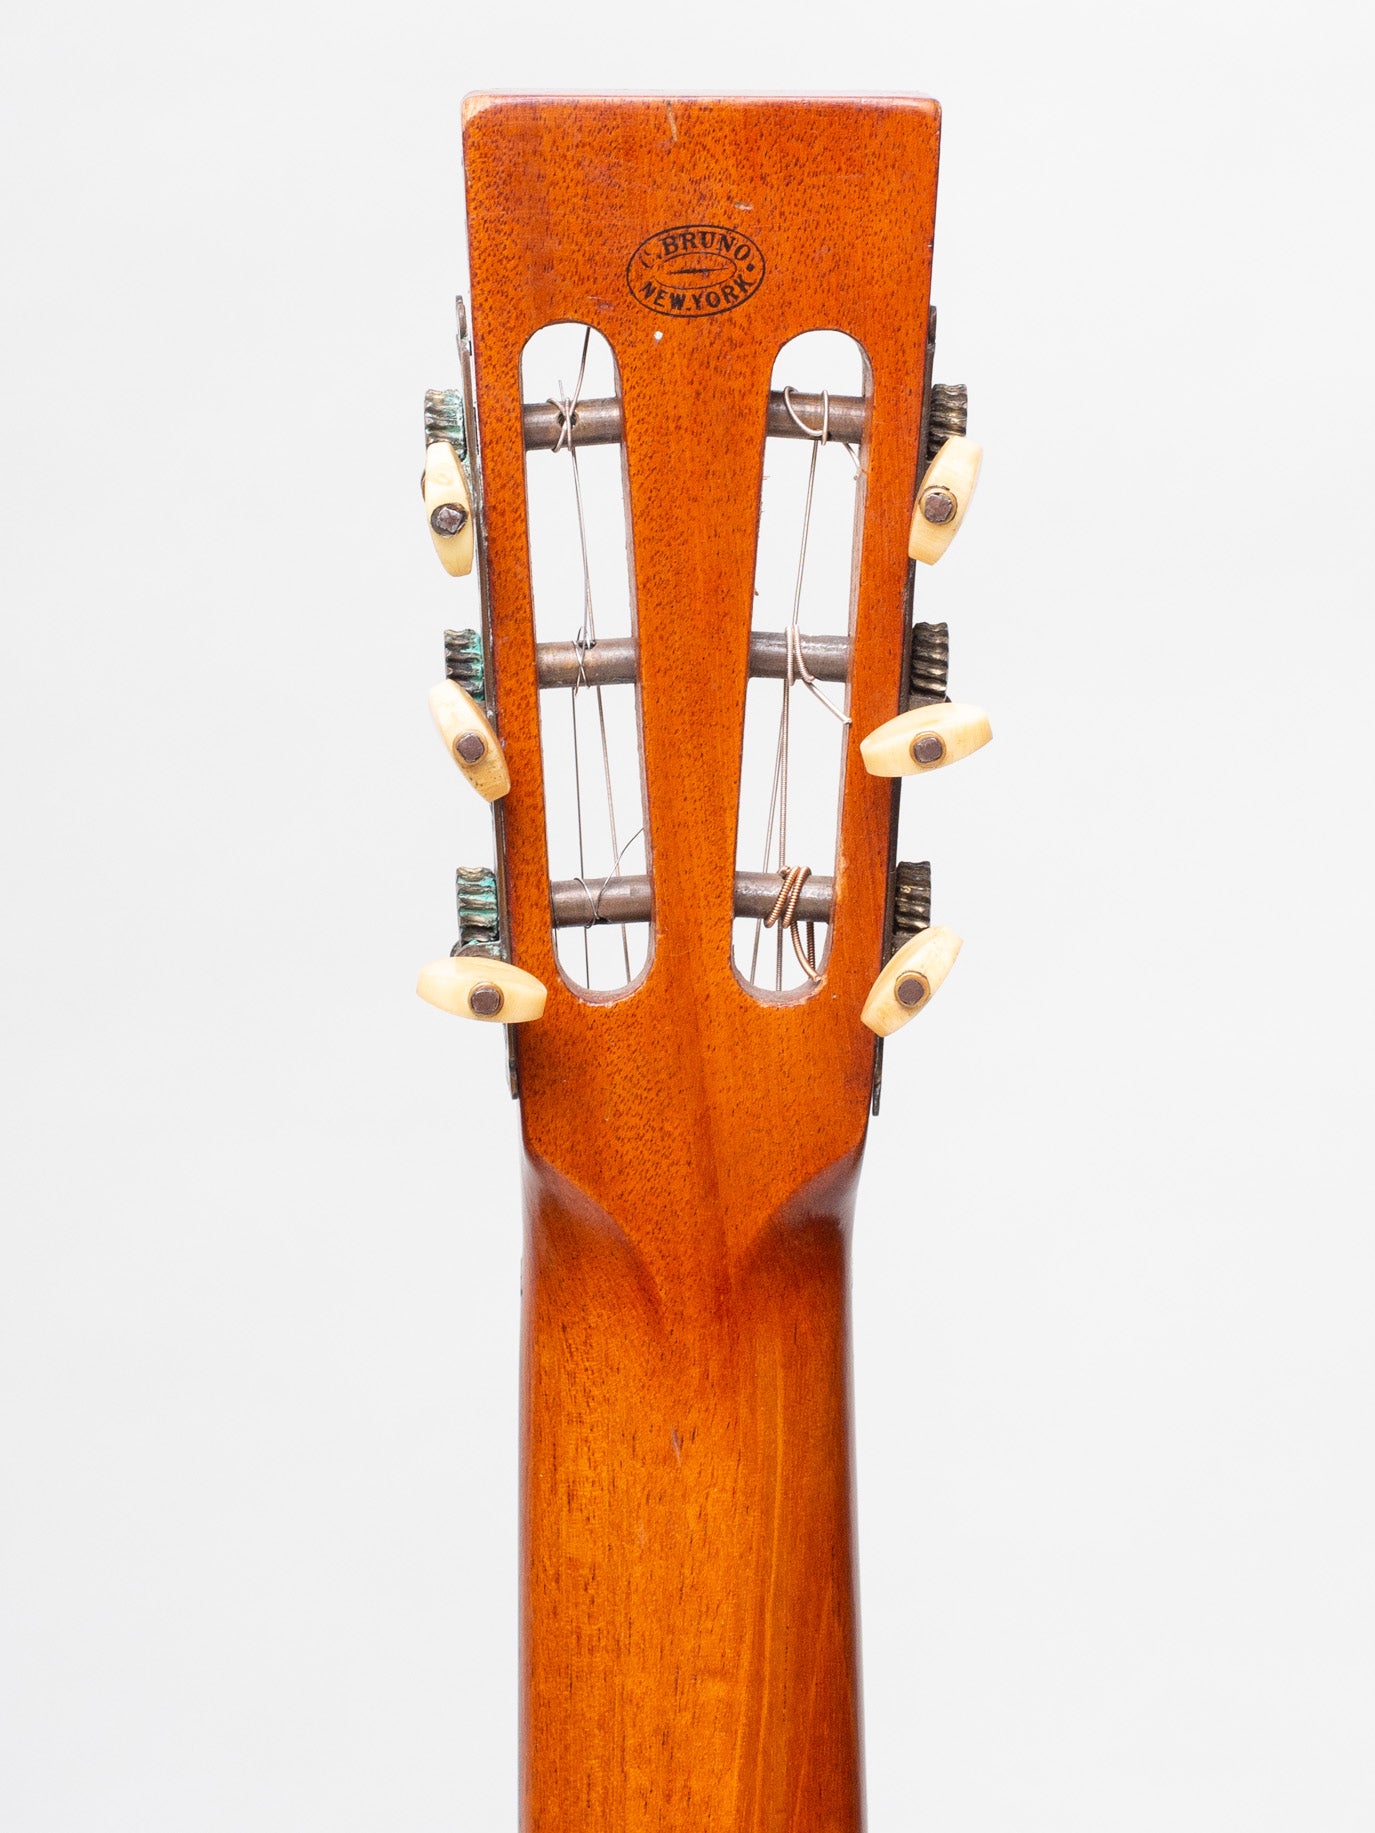 C. 1870 Bruno Acoustic